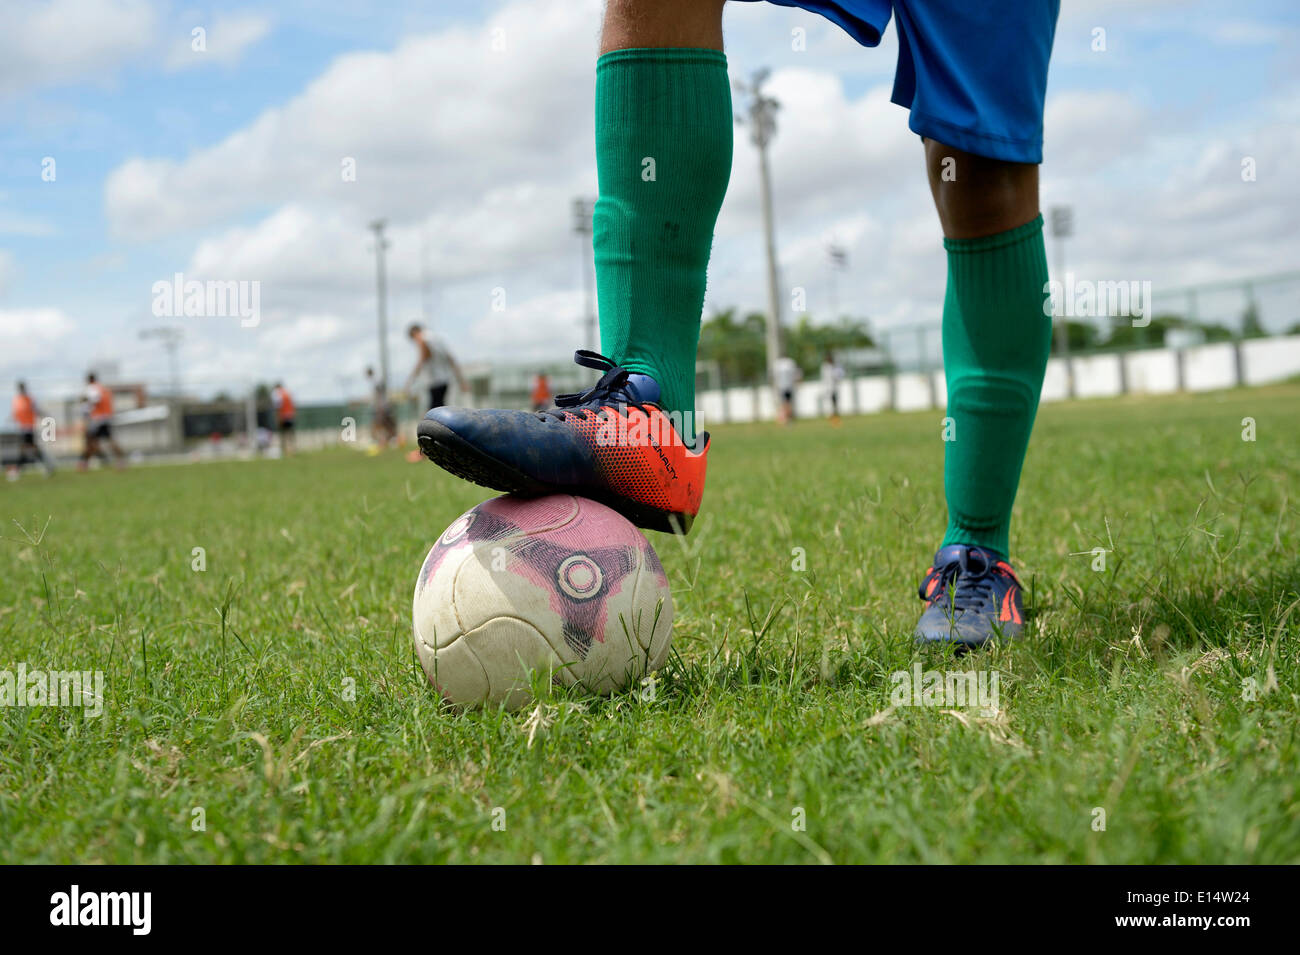 Fußball, Kick-off, junge mit einem Ball immer noch mit seinem Fuß, Fortaleza, Ceará, Brasilien Stockfoto